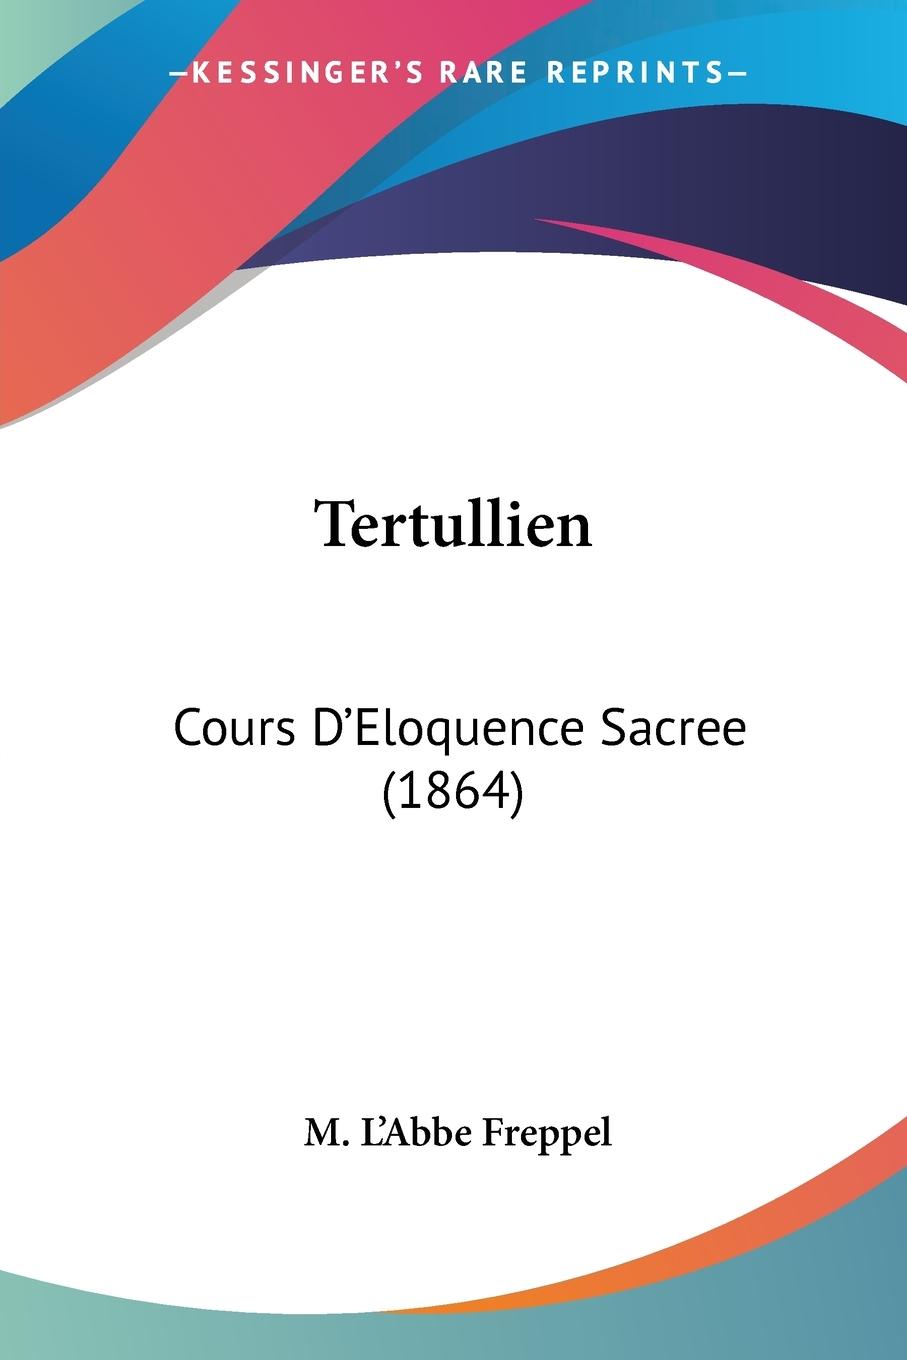 Tertullien - Freppel, M. L Abbe